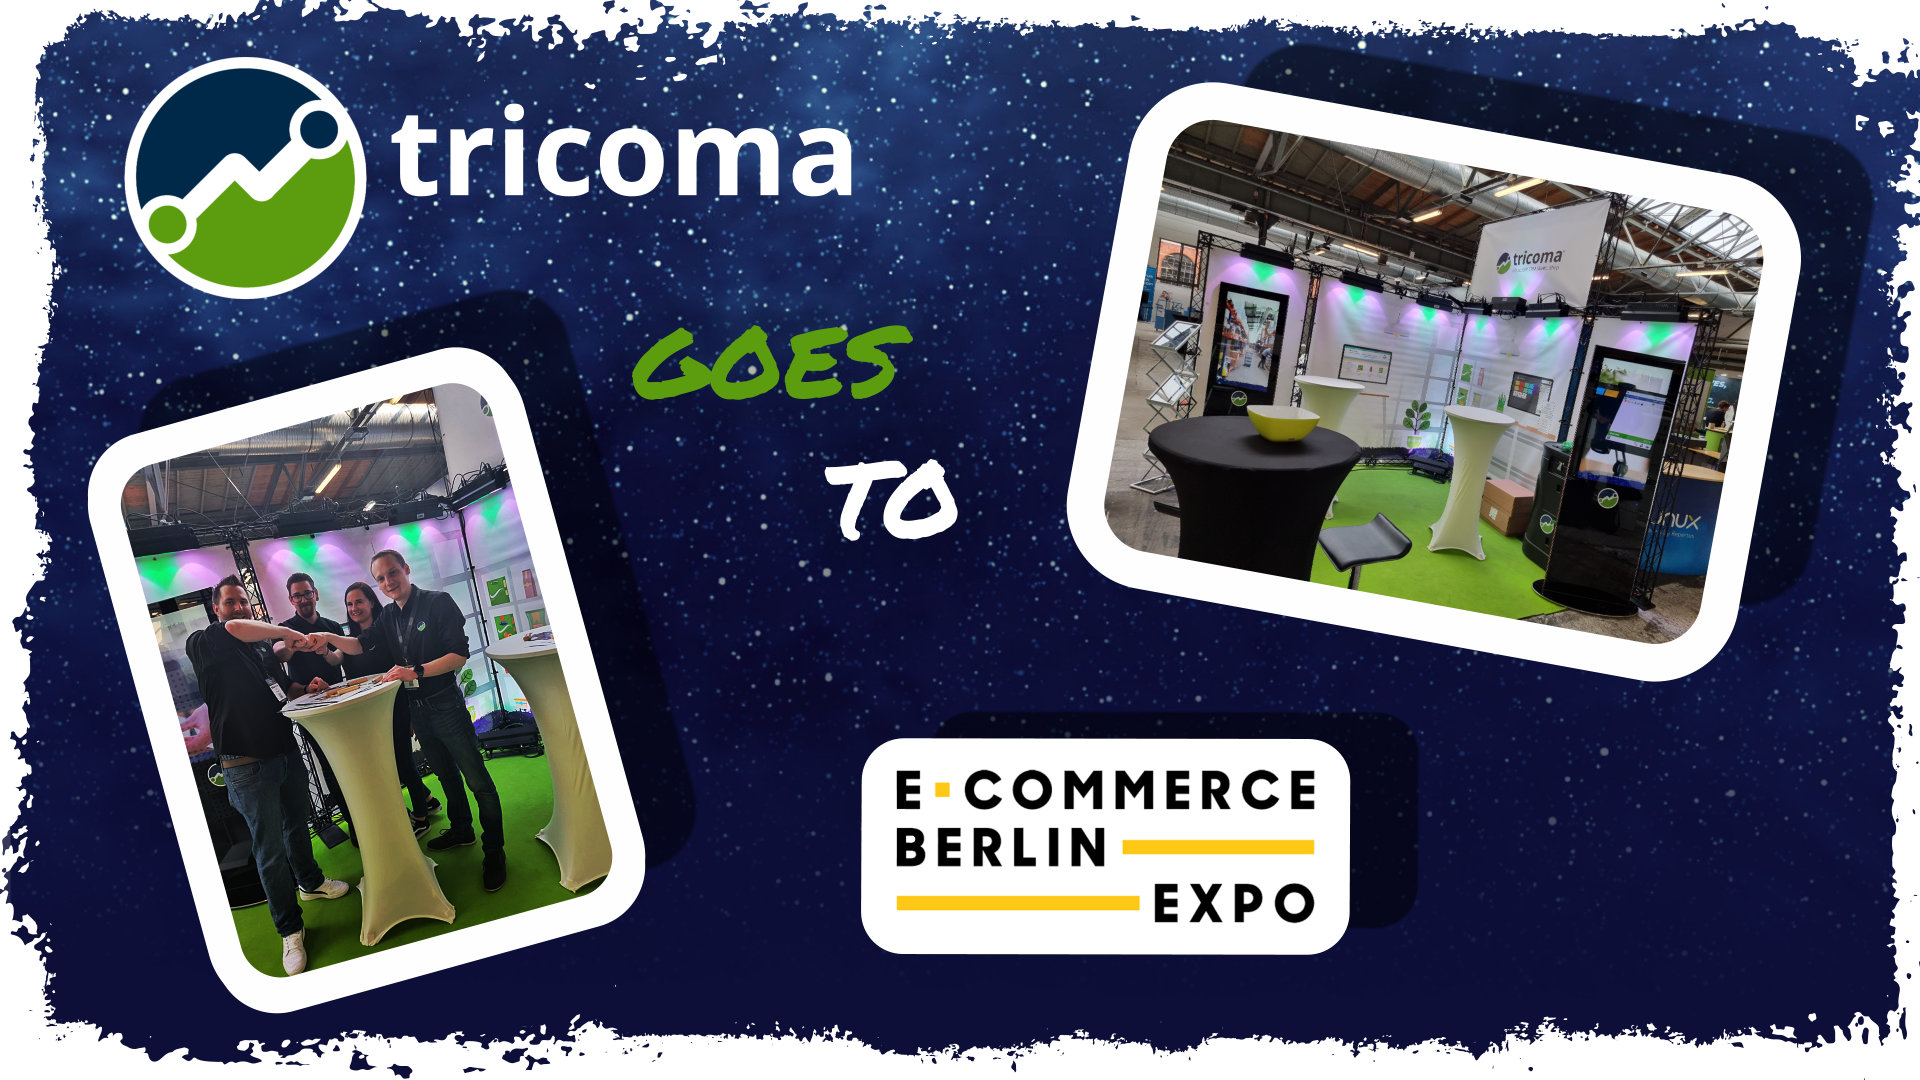 Zusammenfassung der E-Commerce Expo in Berlin